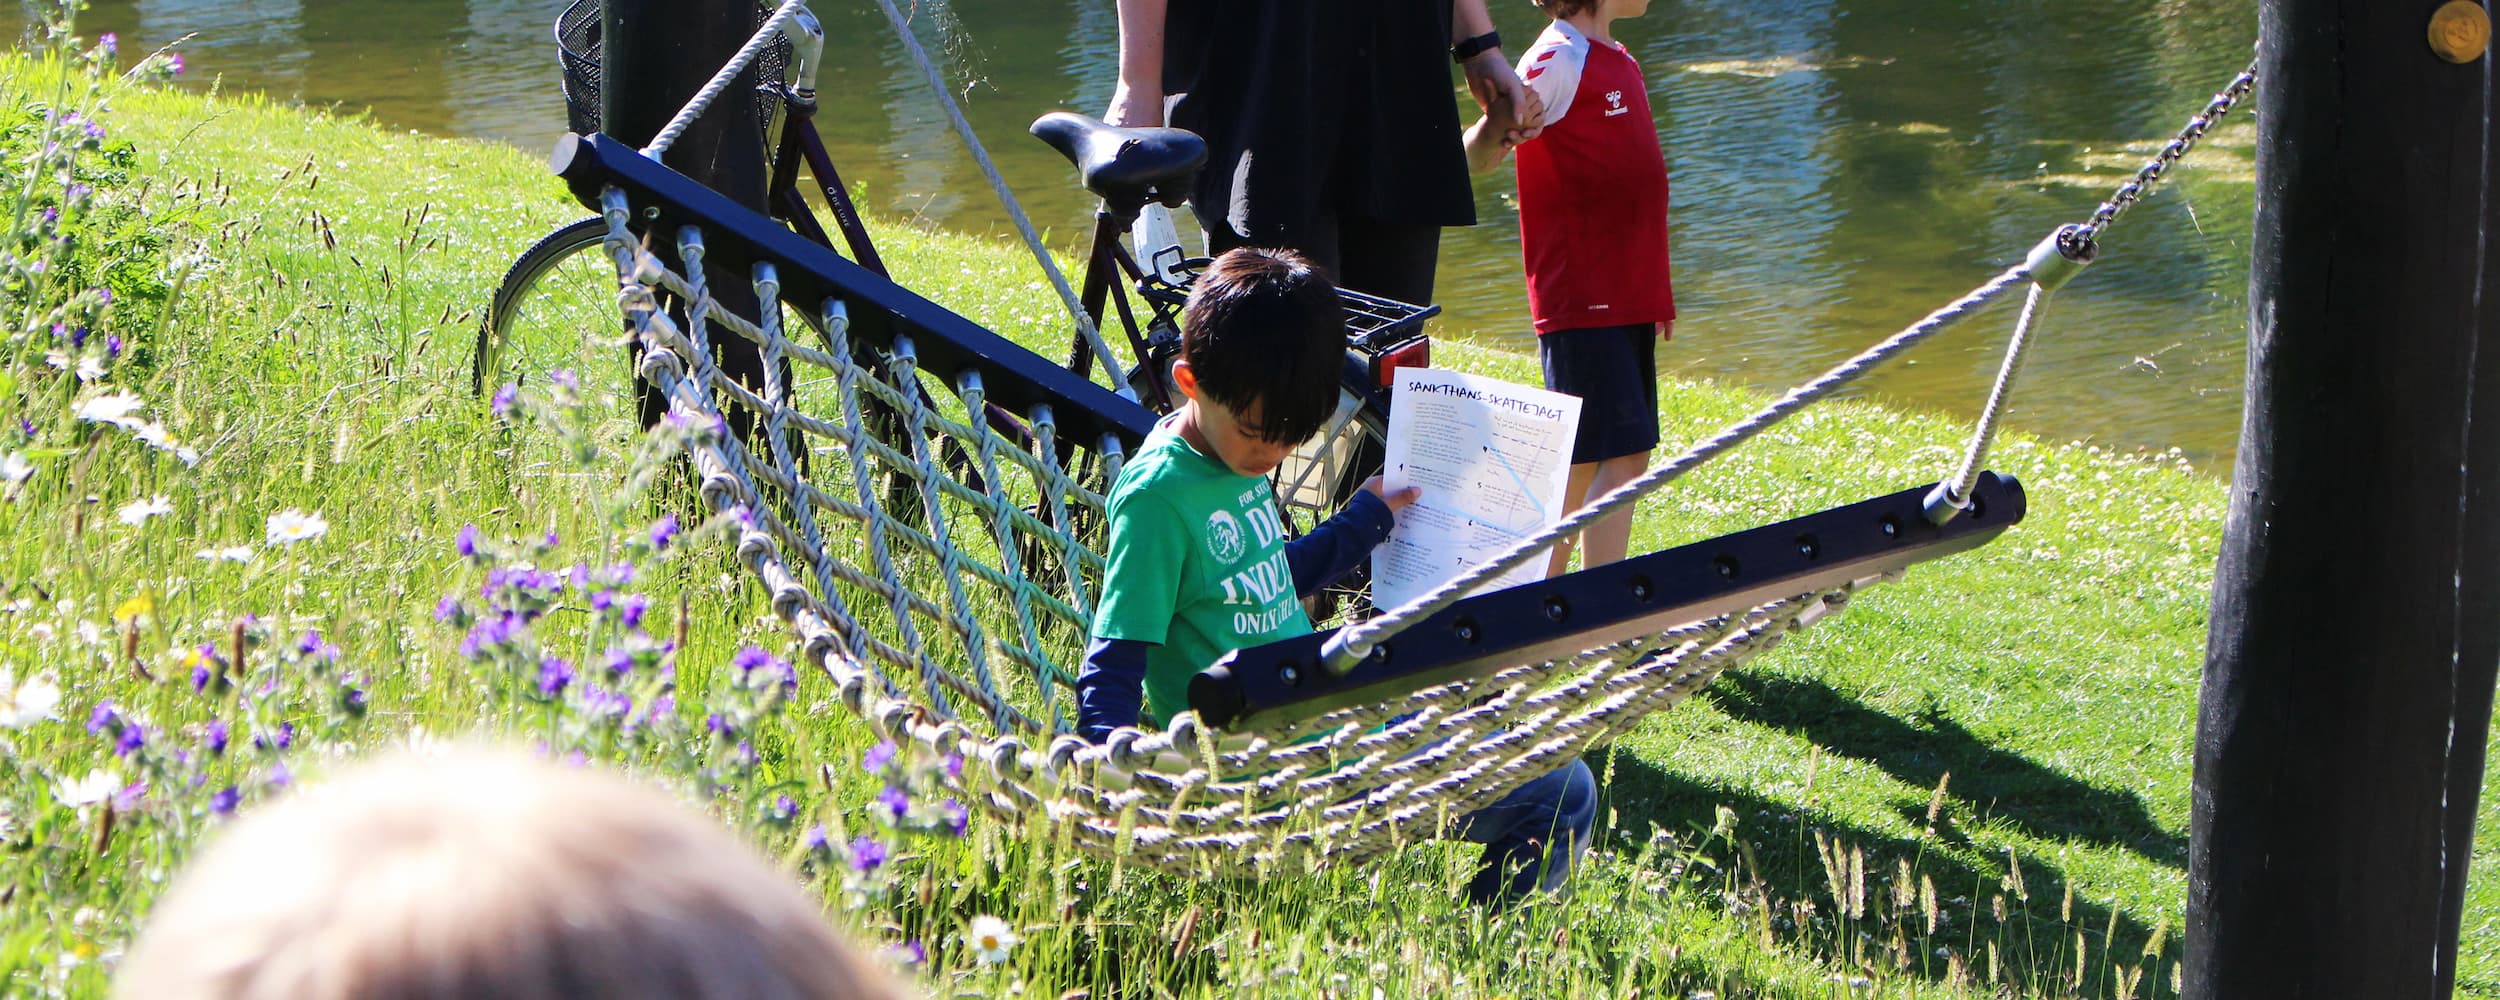 Oplev Ørestads bynatur. En dreng har sat sig i en af hængekøjerne i parken Grønningen i Ørestad Nord, tæt på Tietgenkollegiet. Hængekøjerne er en af de faciliteter, kvarterets grundejerforening har indrettet parken med, og som er til fri brug for alle.